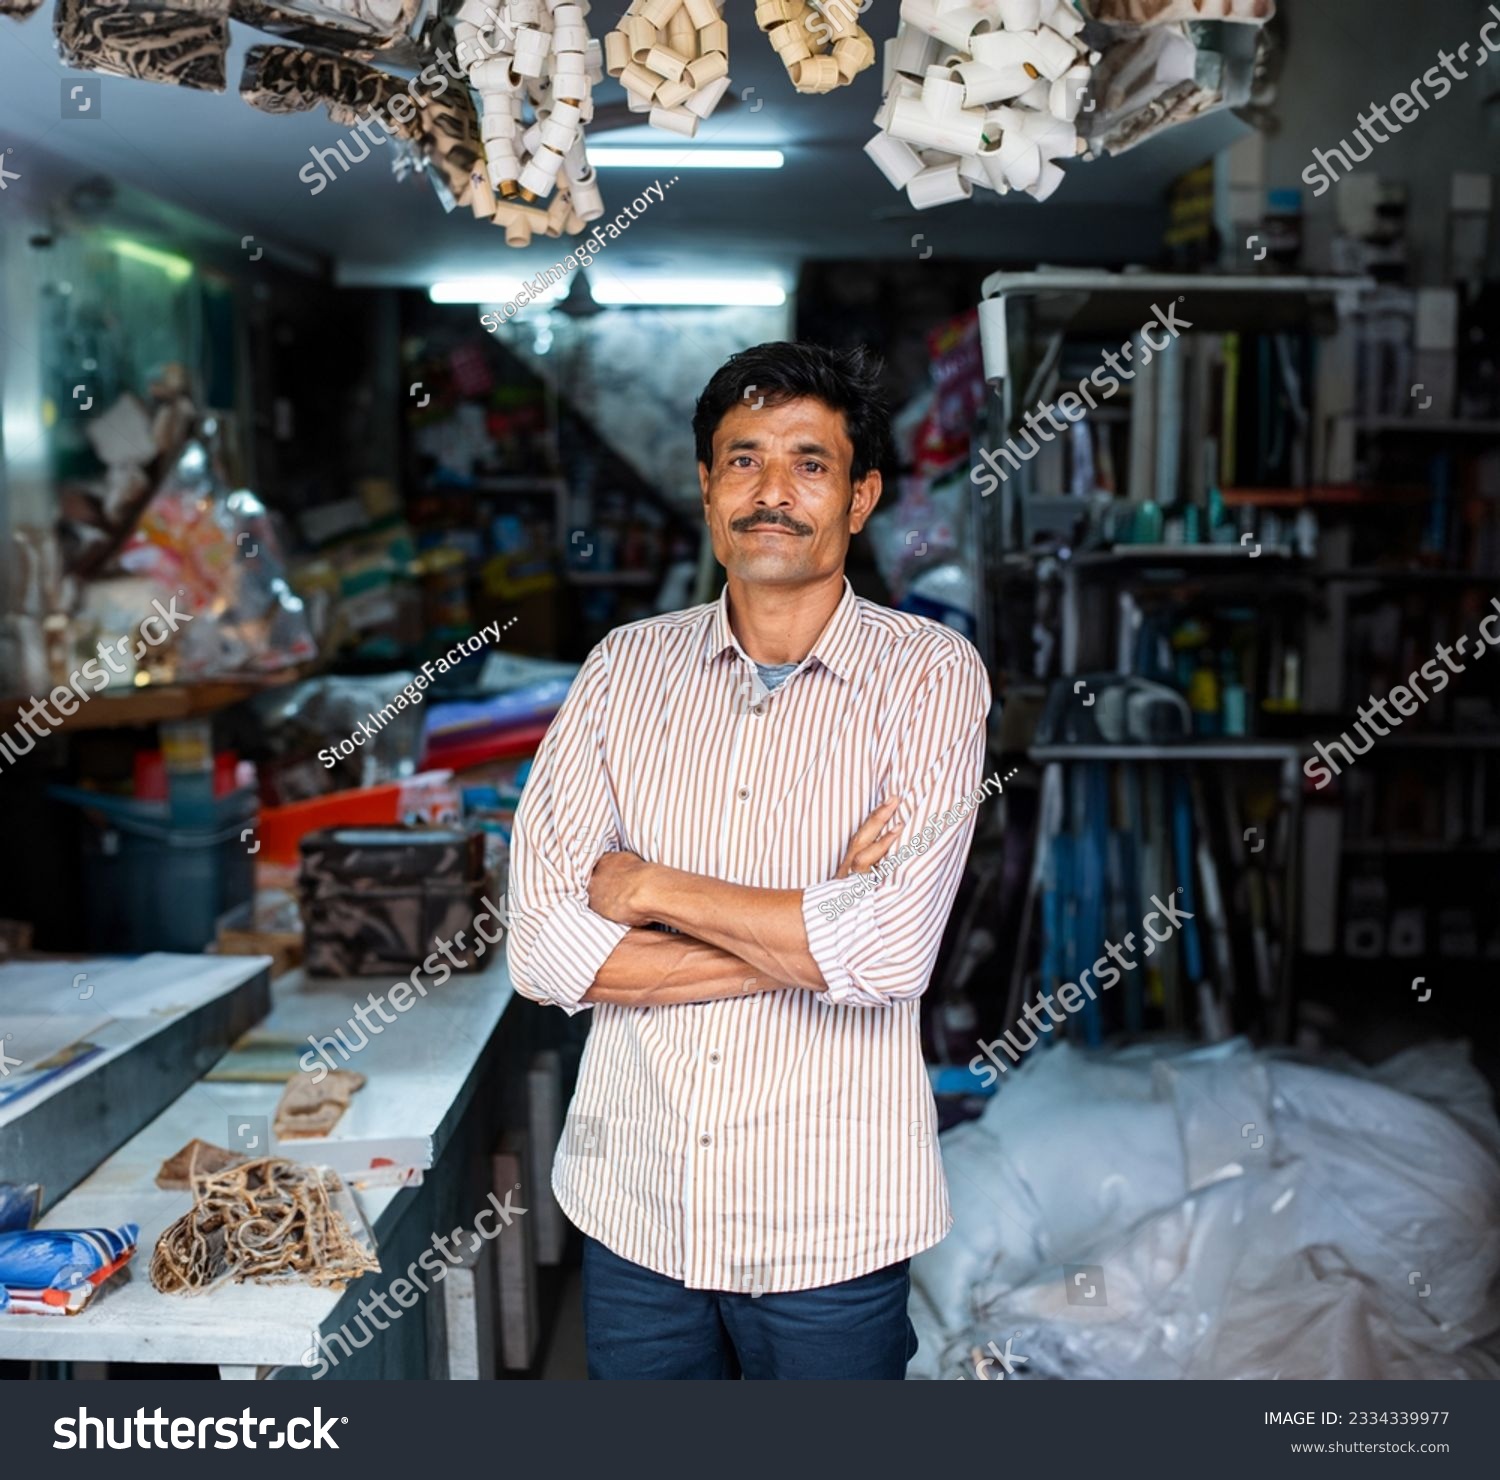 Indian hardware shop owner, salesman, vendor or seller showing products, customer service concept #2334339977